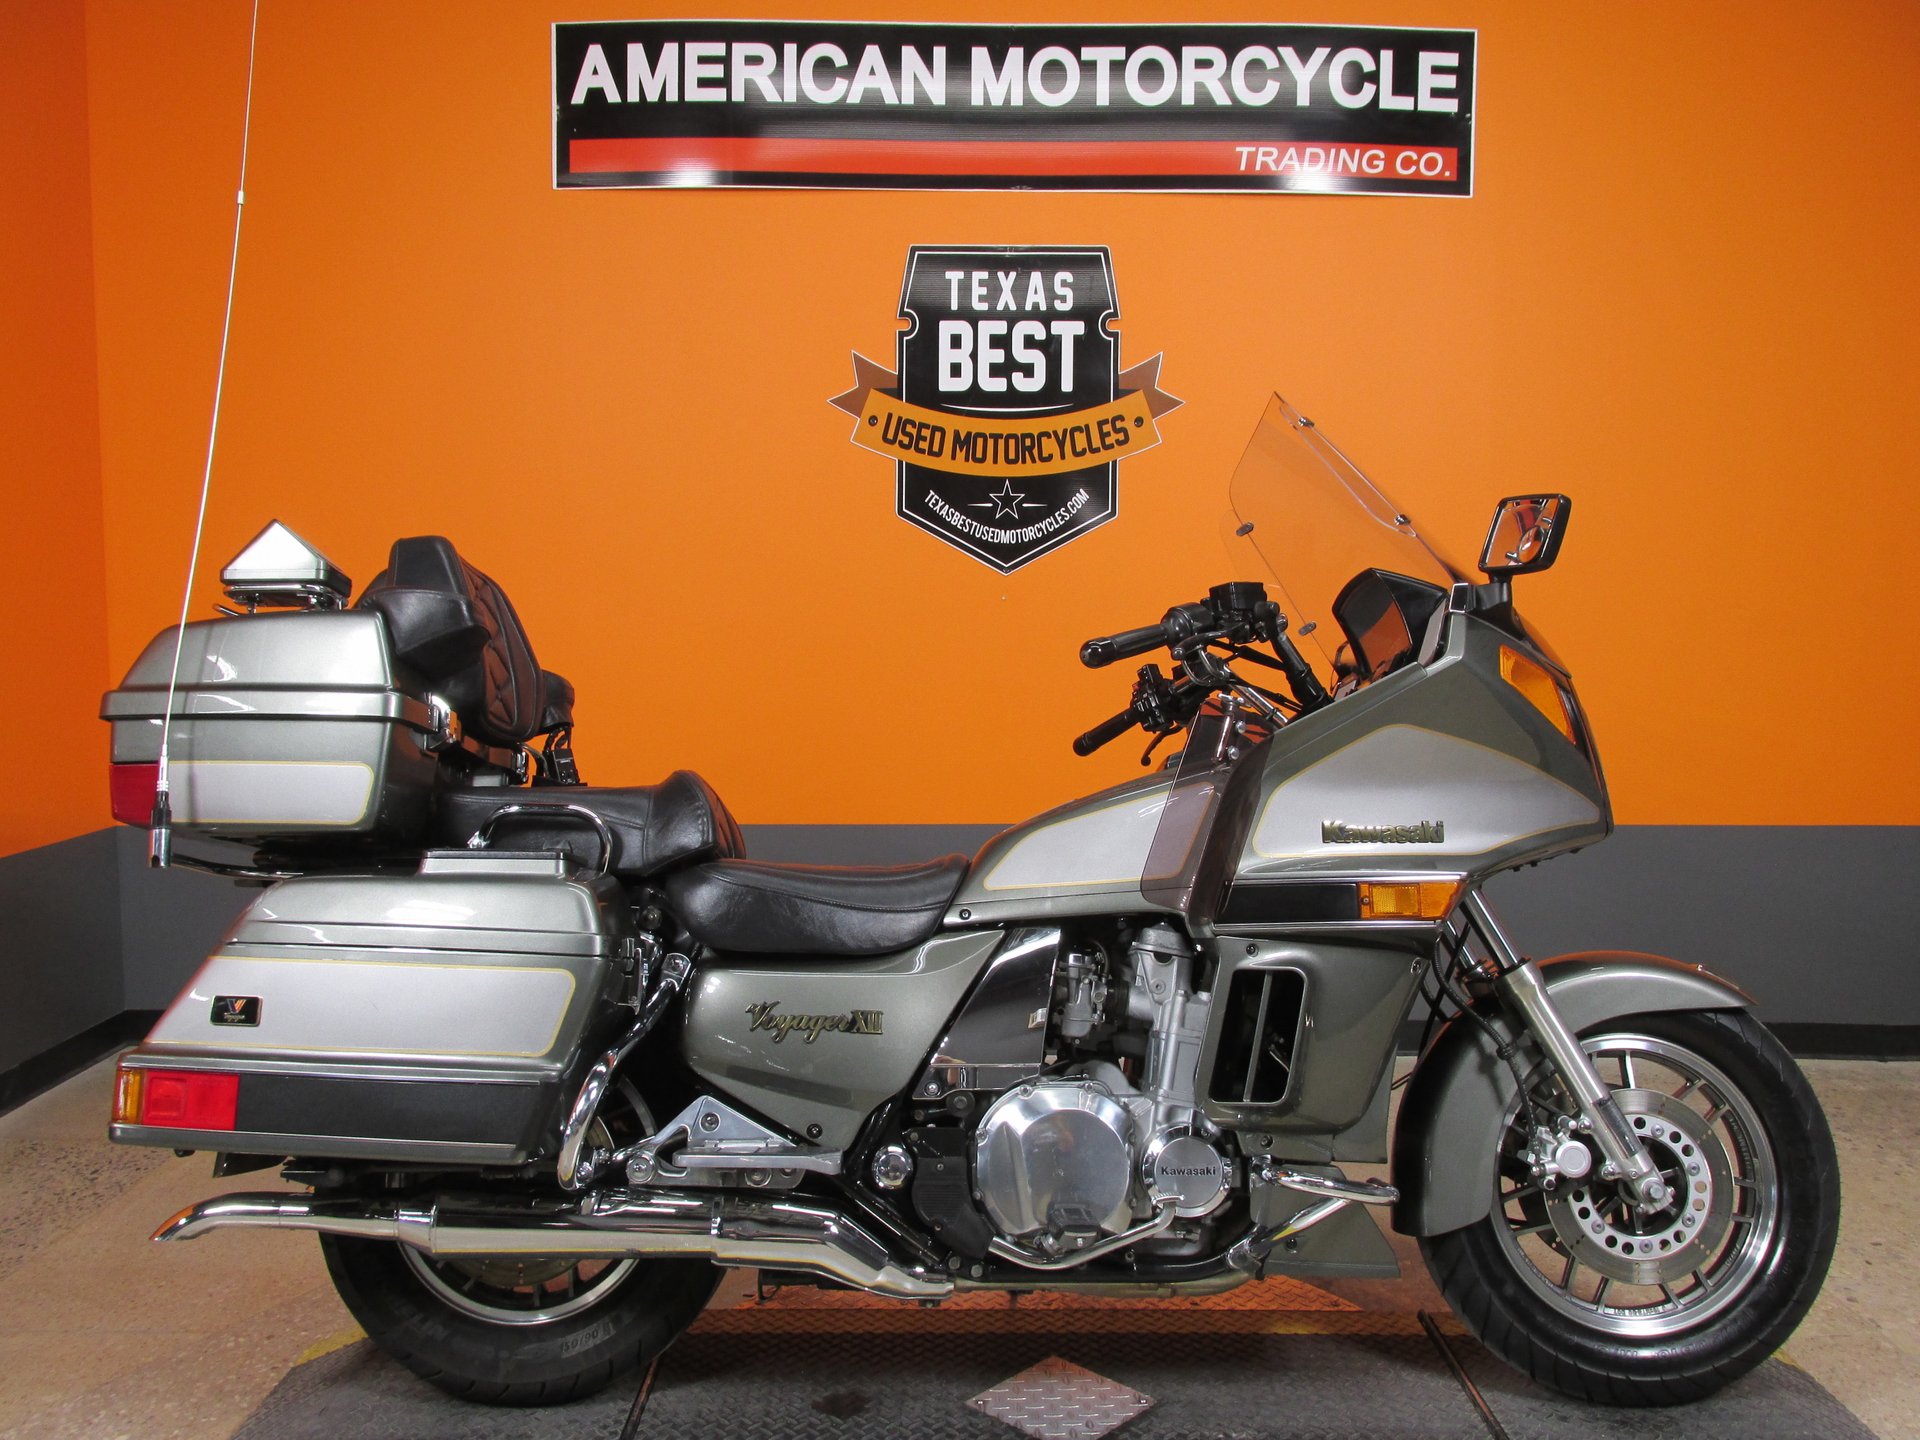 2003 Kawasaki Voyager | American Trading Company - Harley Davidson Motorcycles